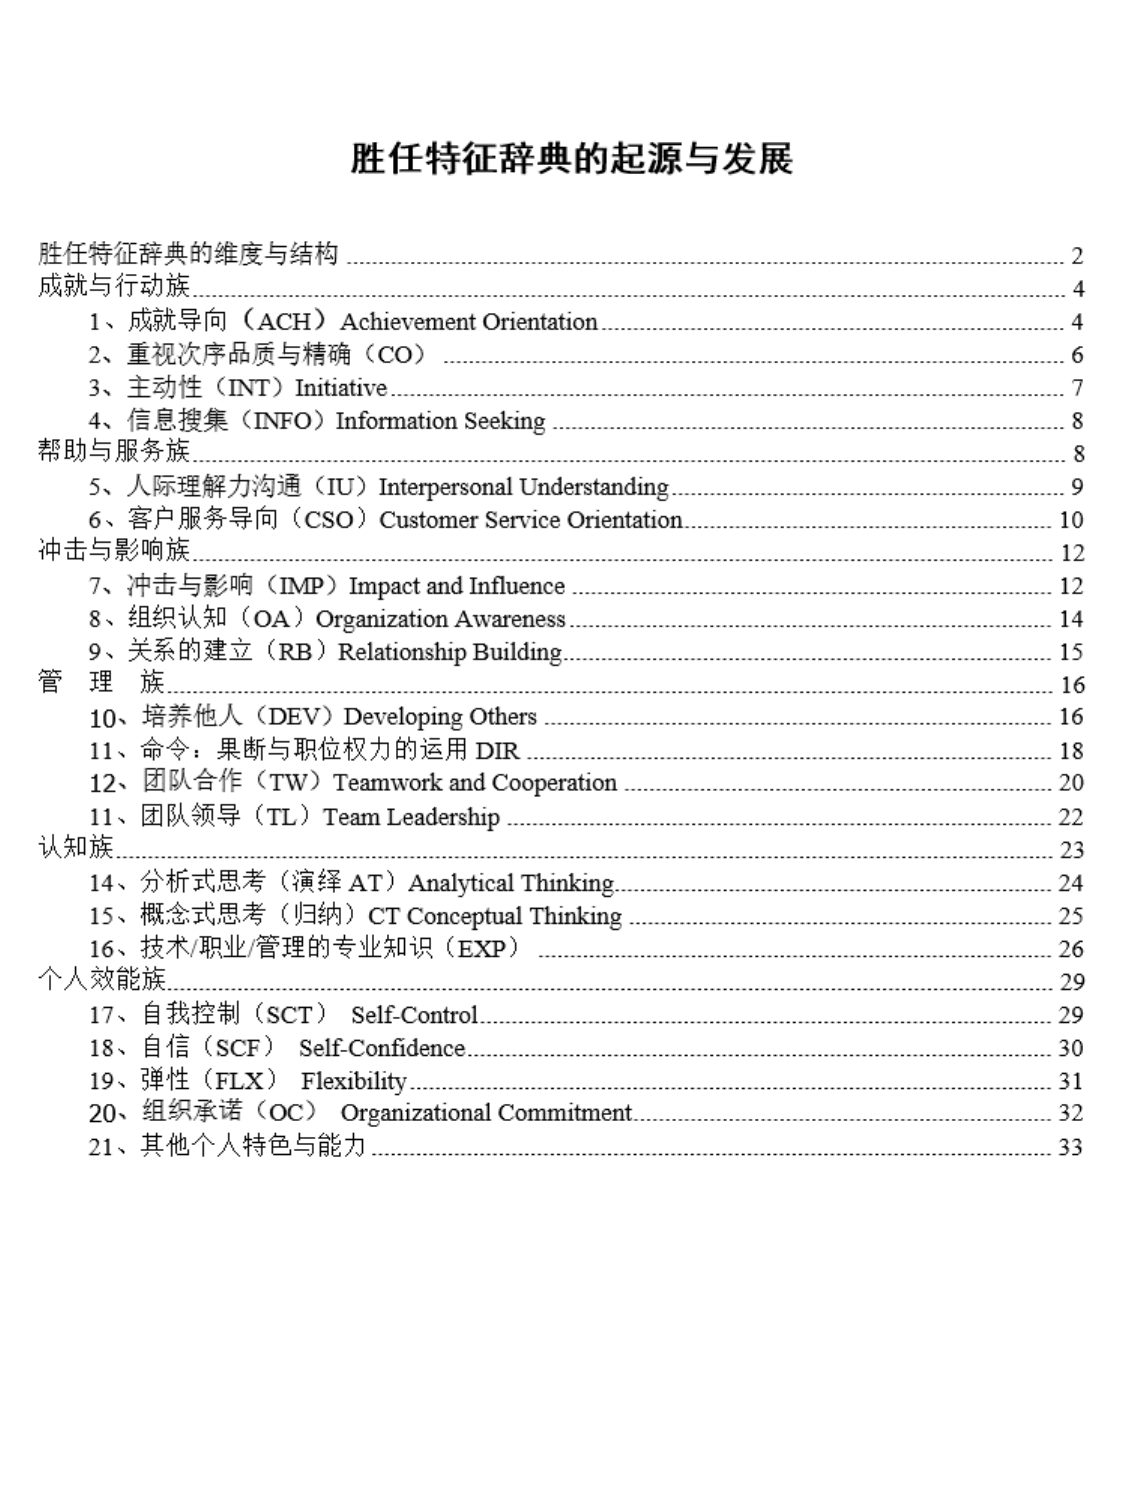 麦克利兰-海氏-超全的6族21项能力素质模型词典.pdf